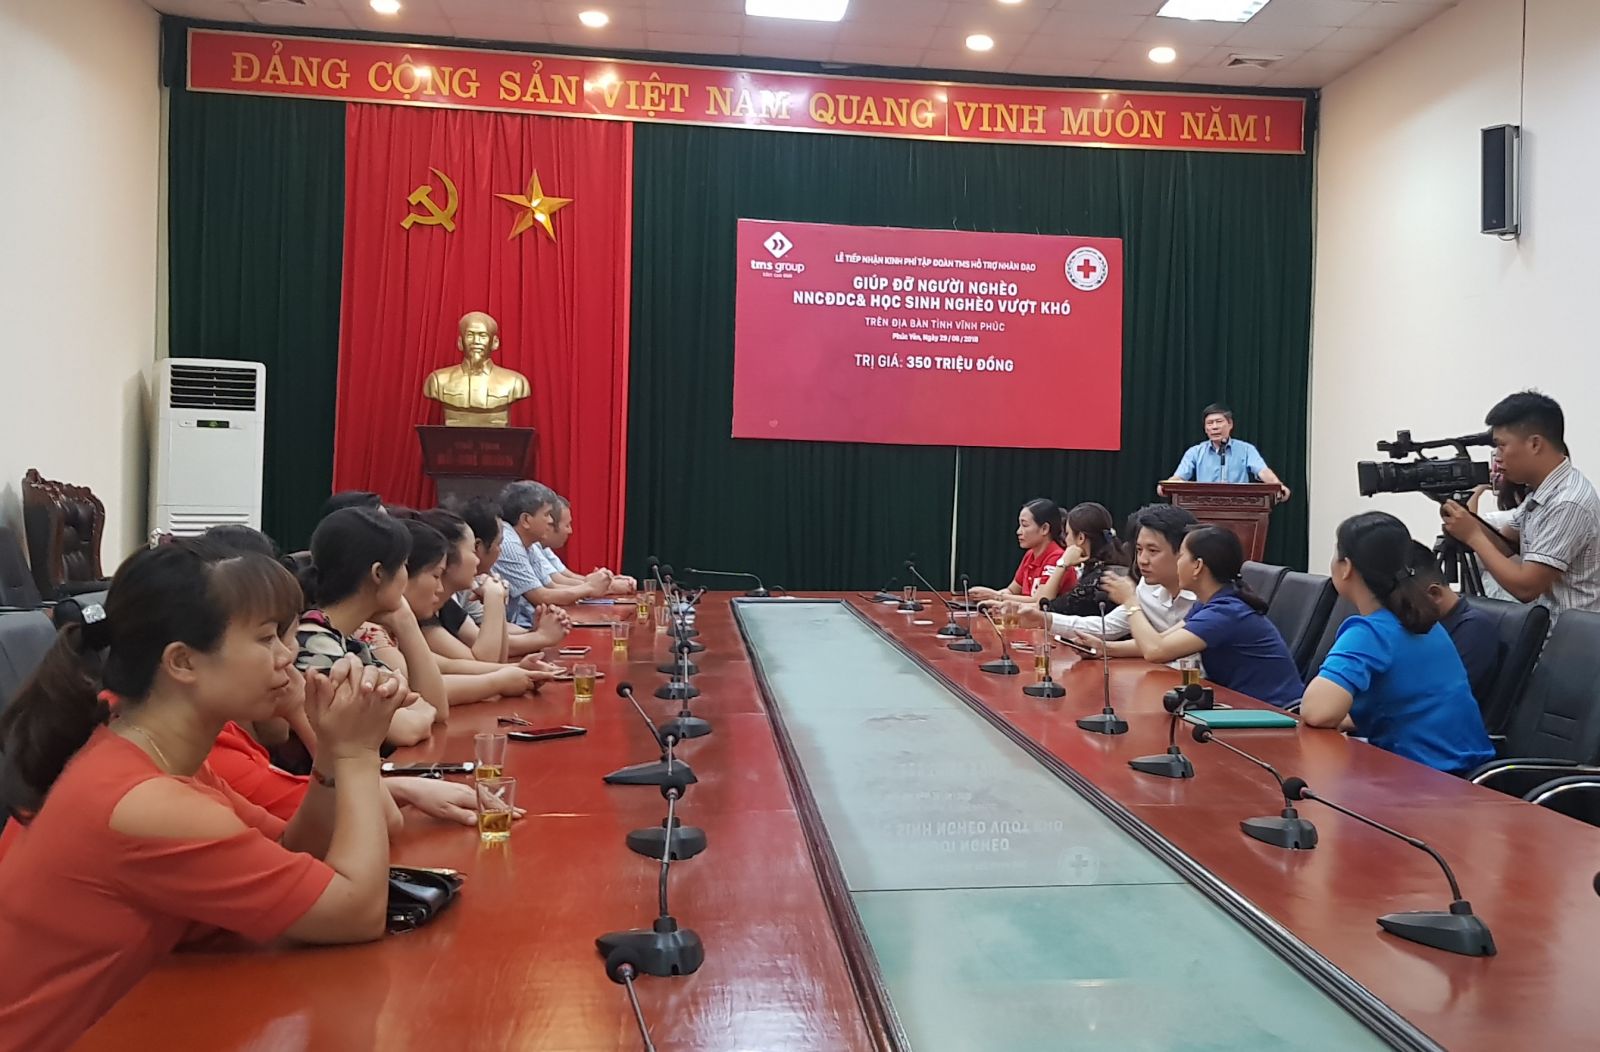 Ông Lê Văn Tân - Phó Chủ tịch UBND TP Phúc Yên ghi nhận sự hỗ trợ của Tập đoàn TMS với sứ mệnh chung tay vì người nghèo